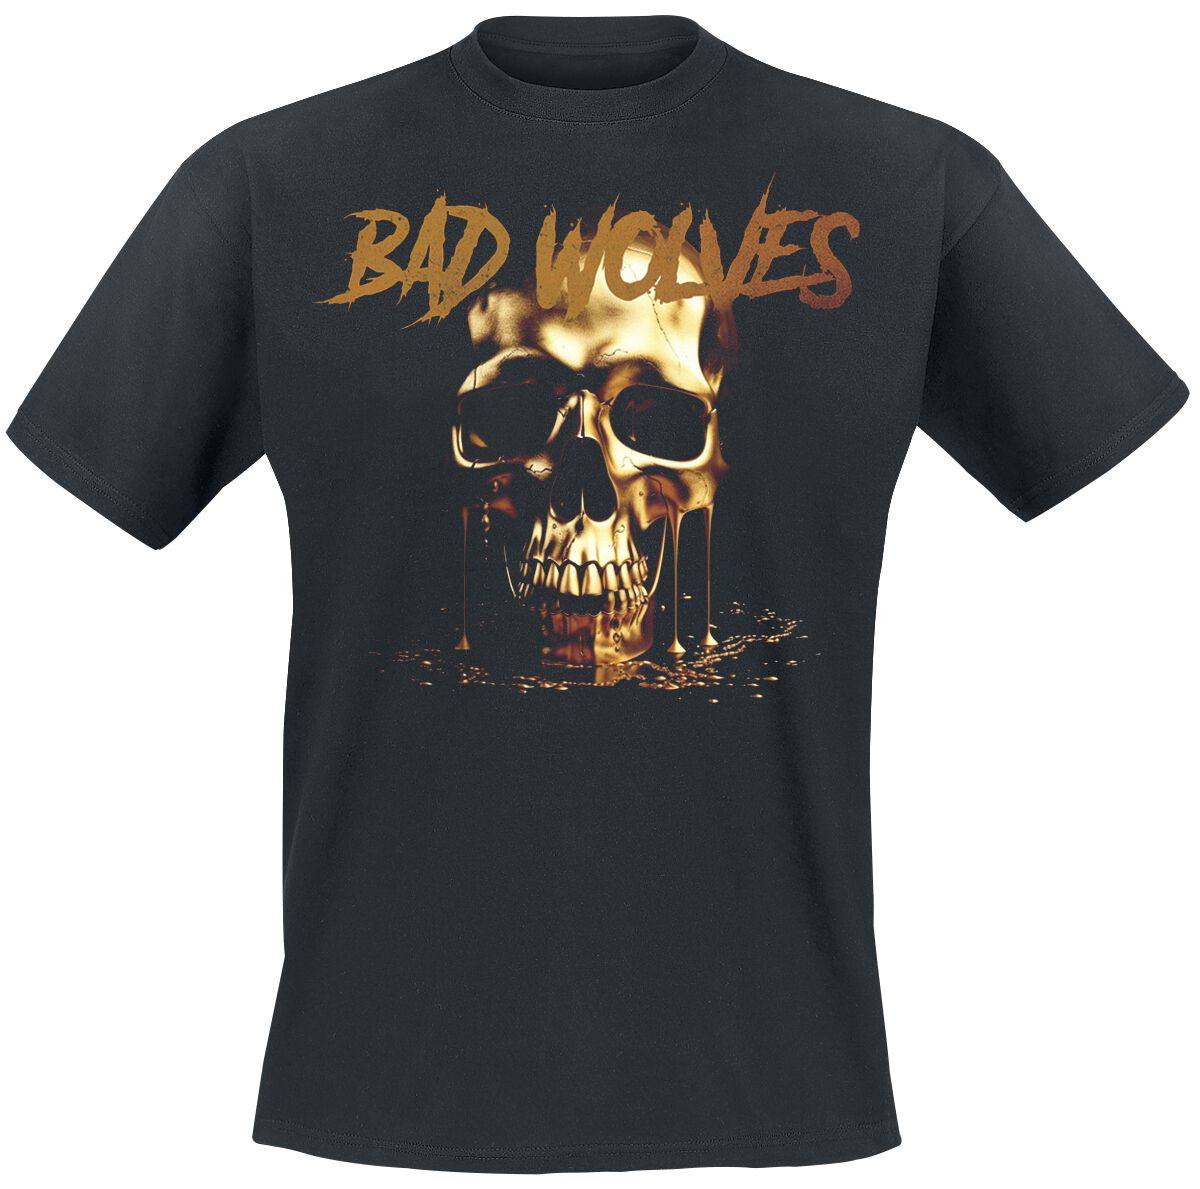 Bad Wolves T-Shirt - Die about it - S bis 4XL - für Männer - Größe 4XL - schwarz  - Lizenziertes Merchandise!